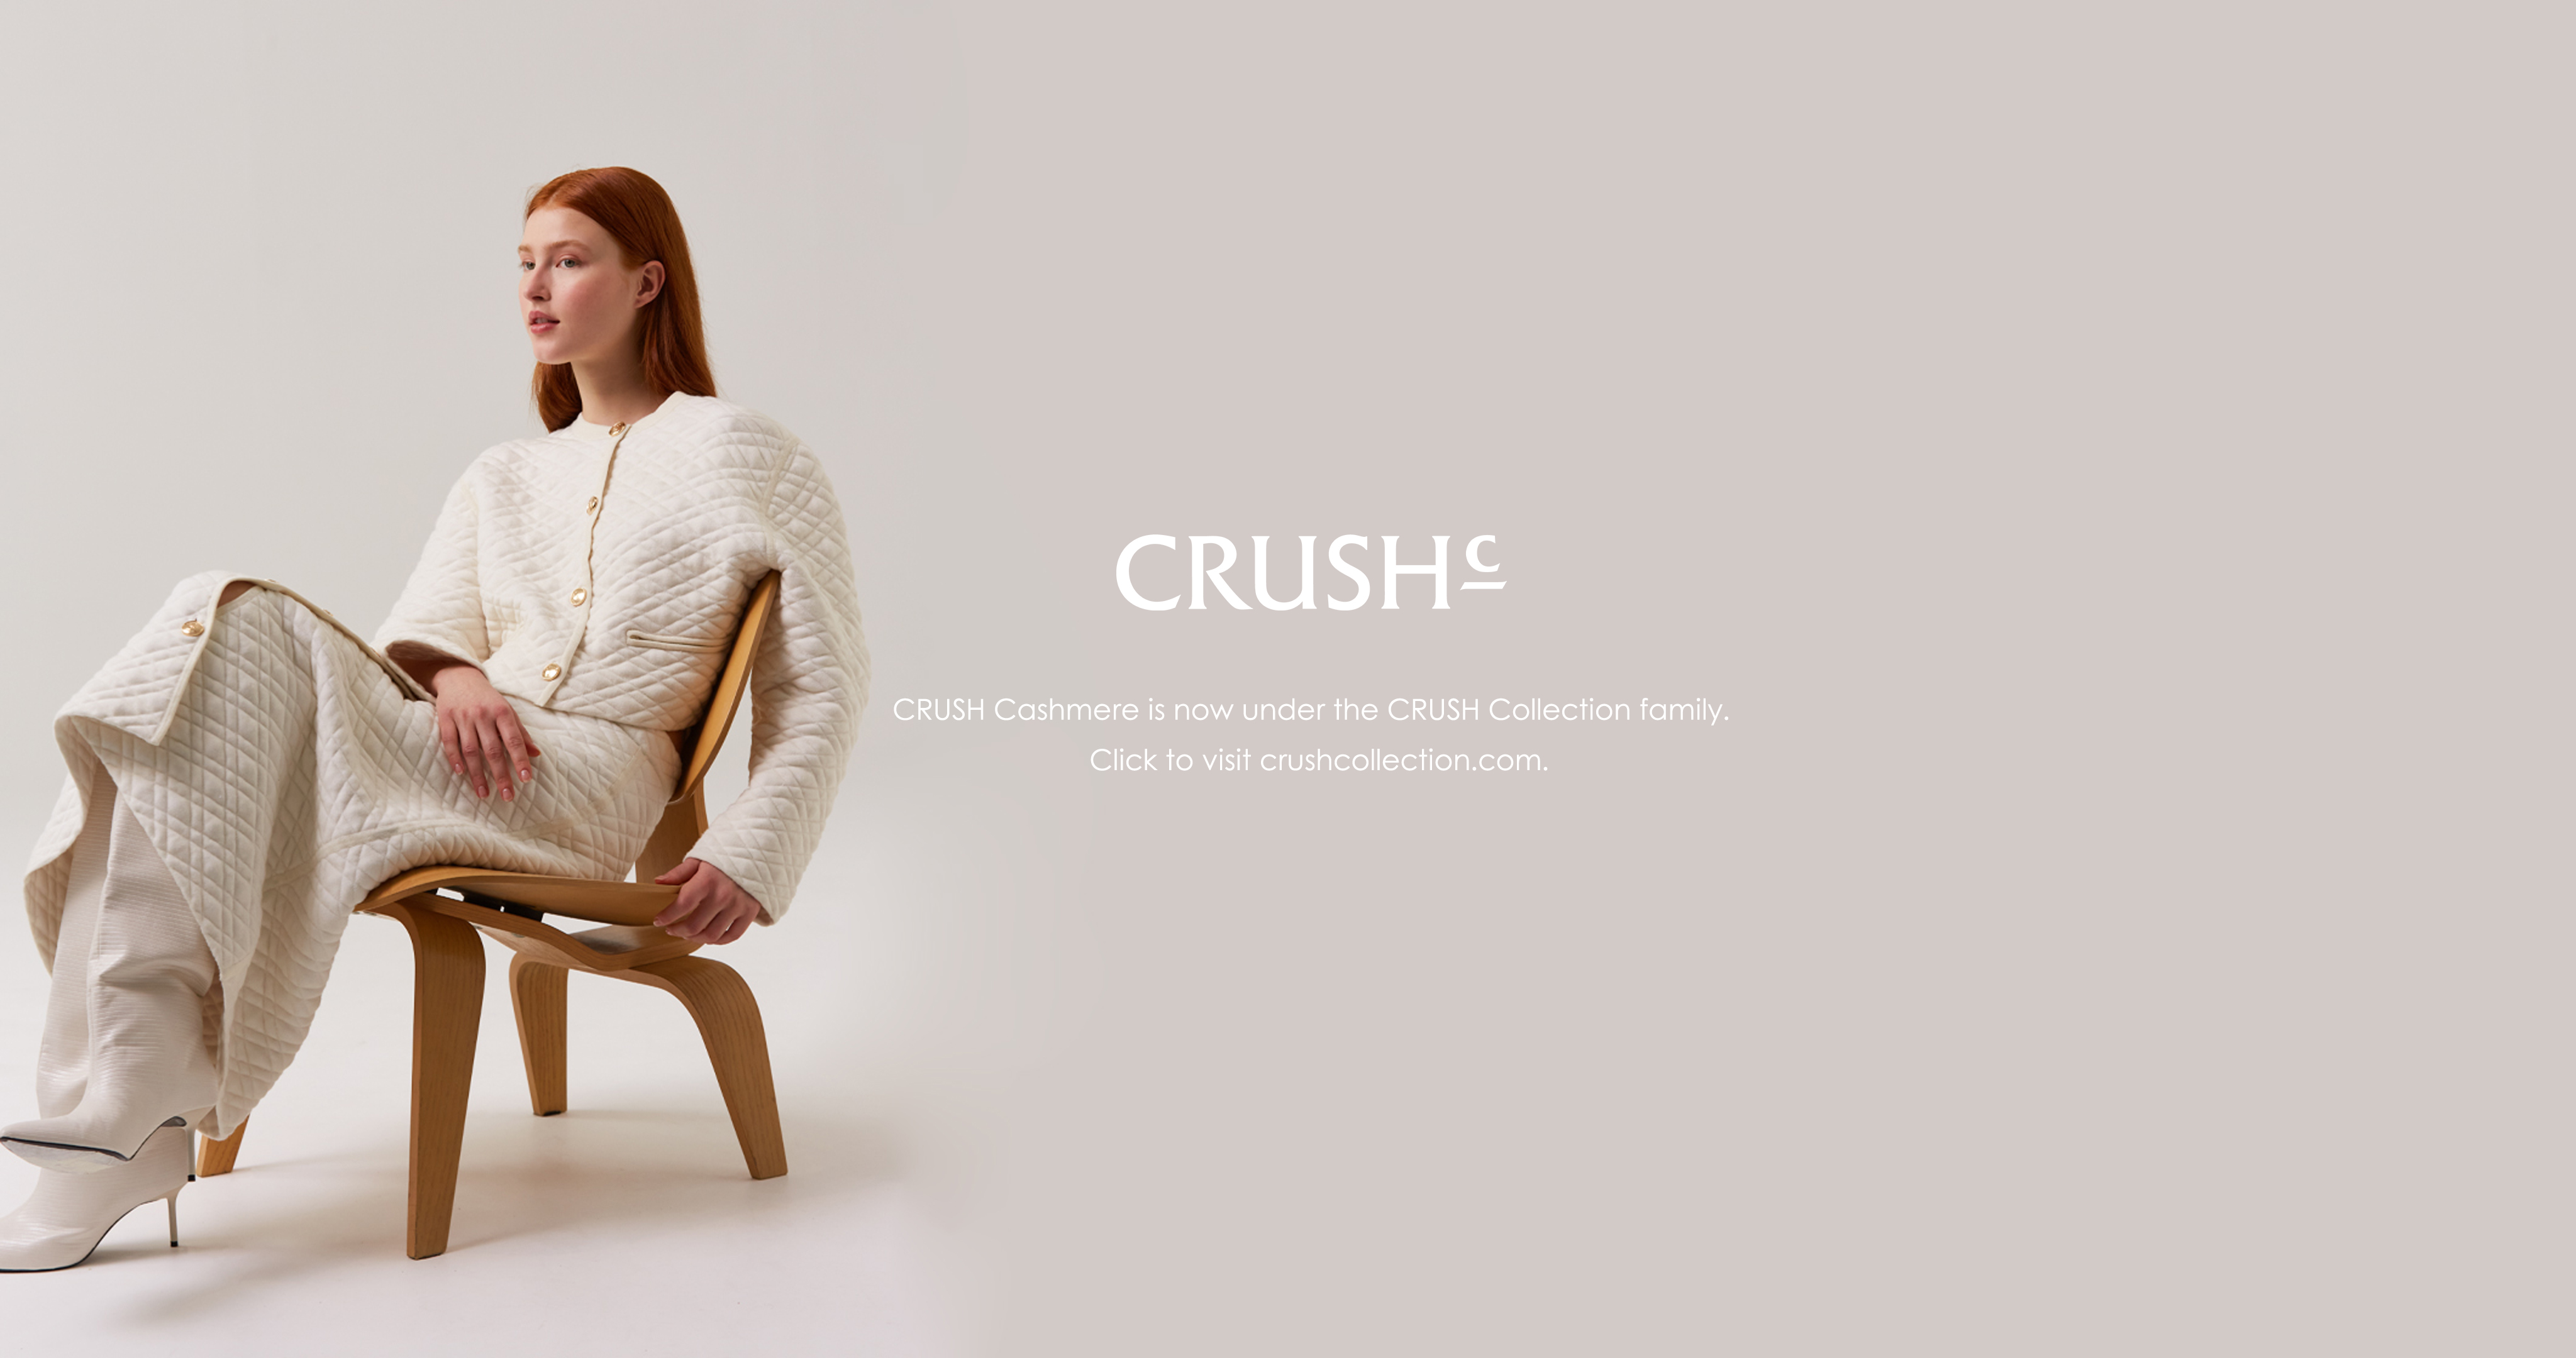 “Crush